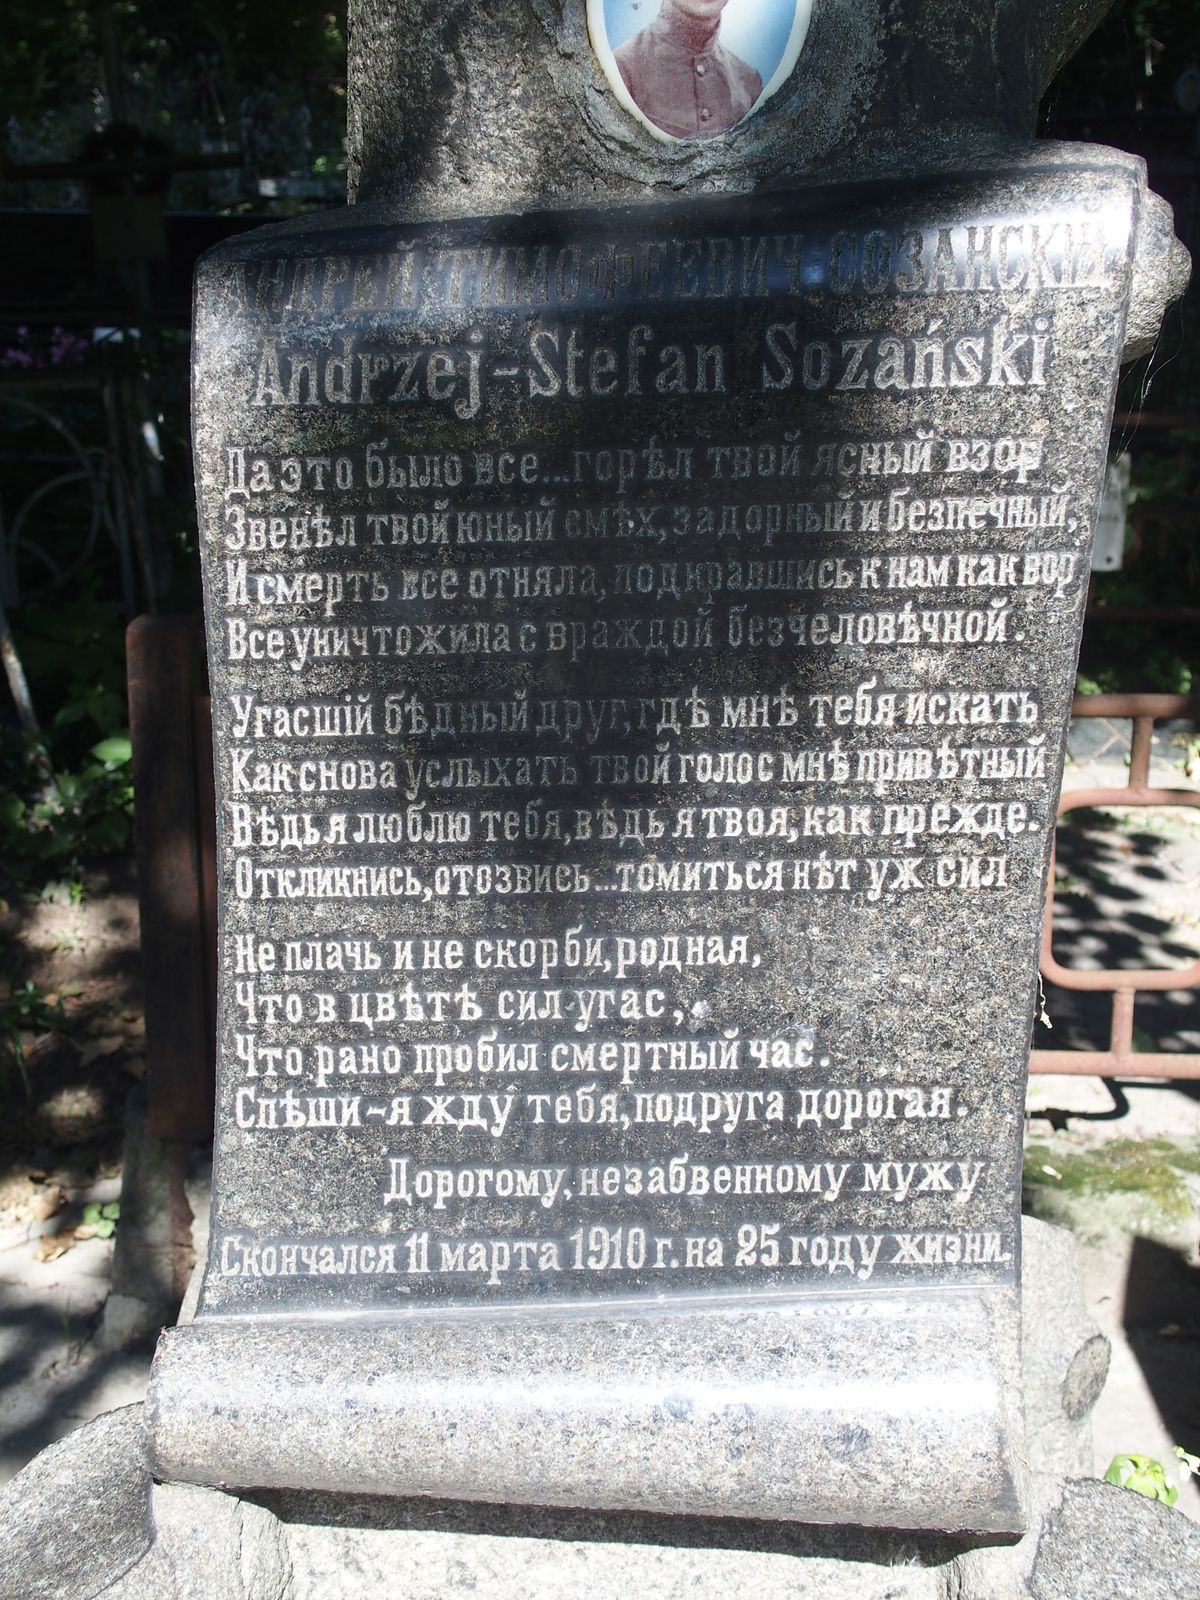 Gravestone inscription of Andrei Stefan Sozansky, Elena Mertens Sozanska, Andrei Vadimovič Sozansky, Anatolij Mihajlovič Popov